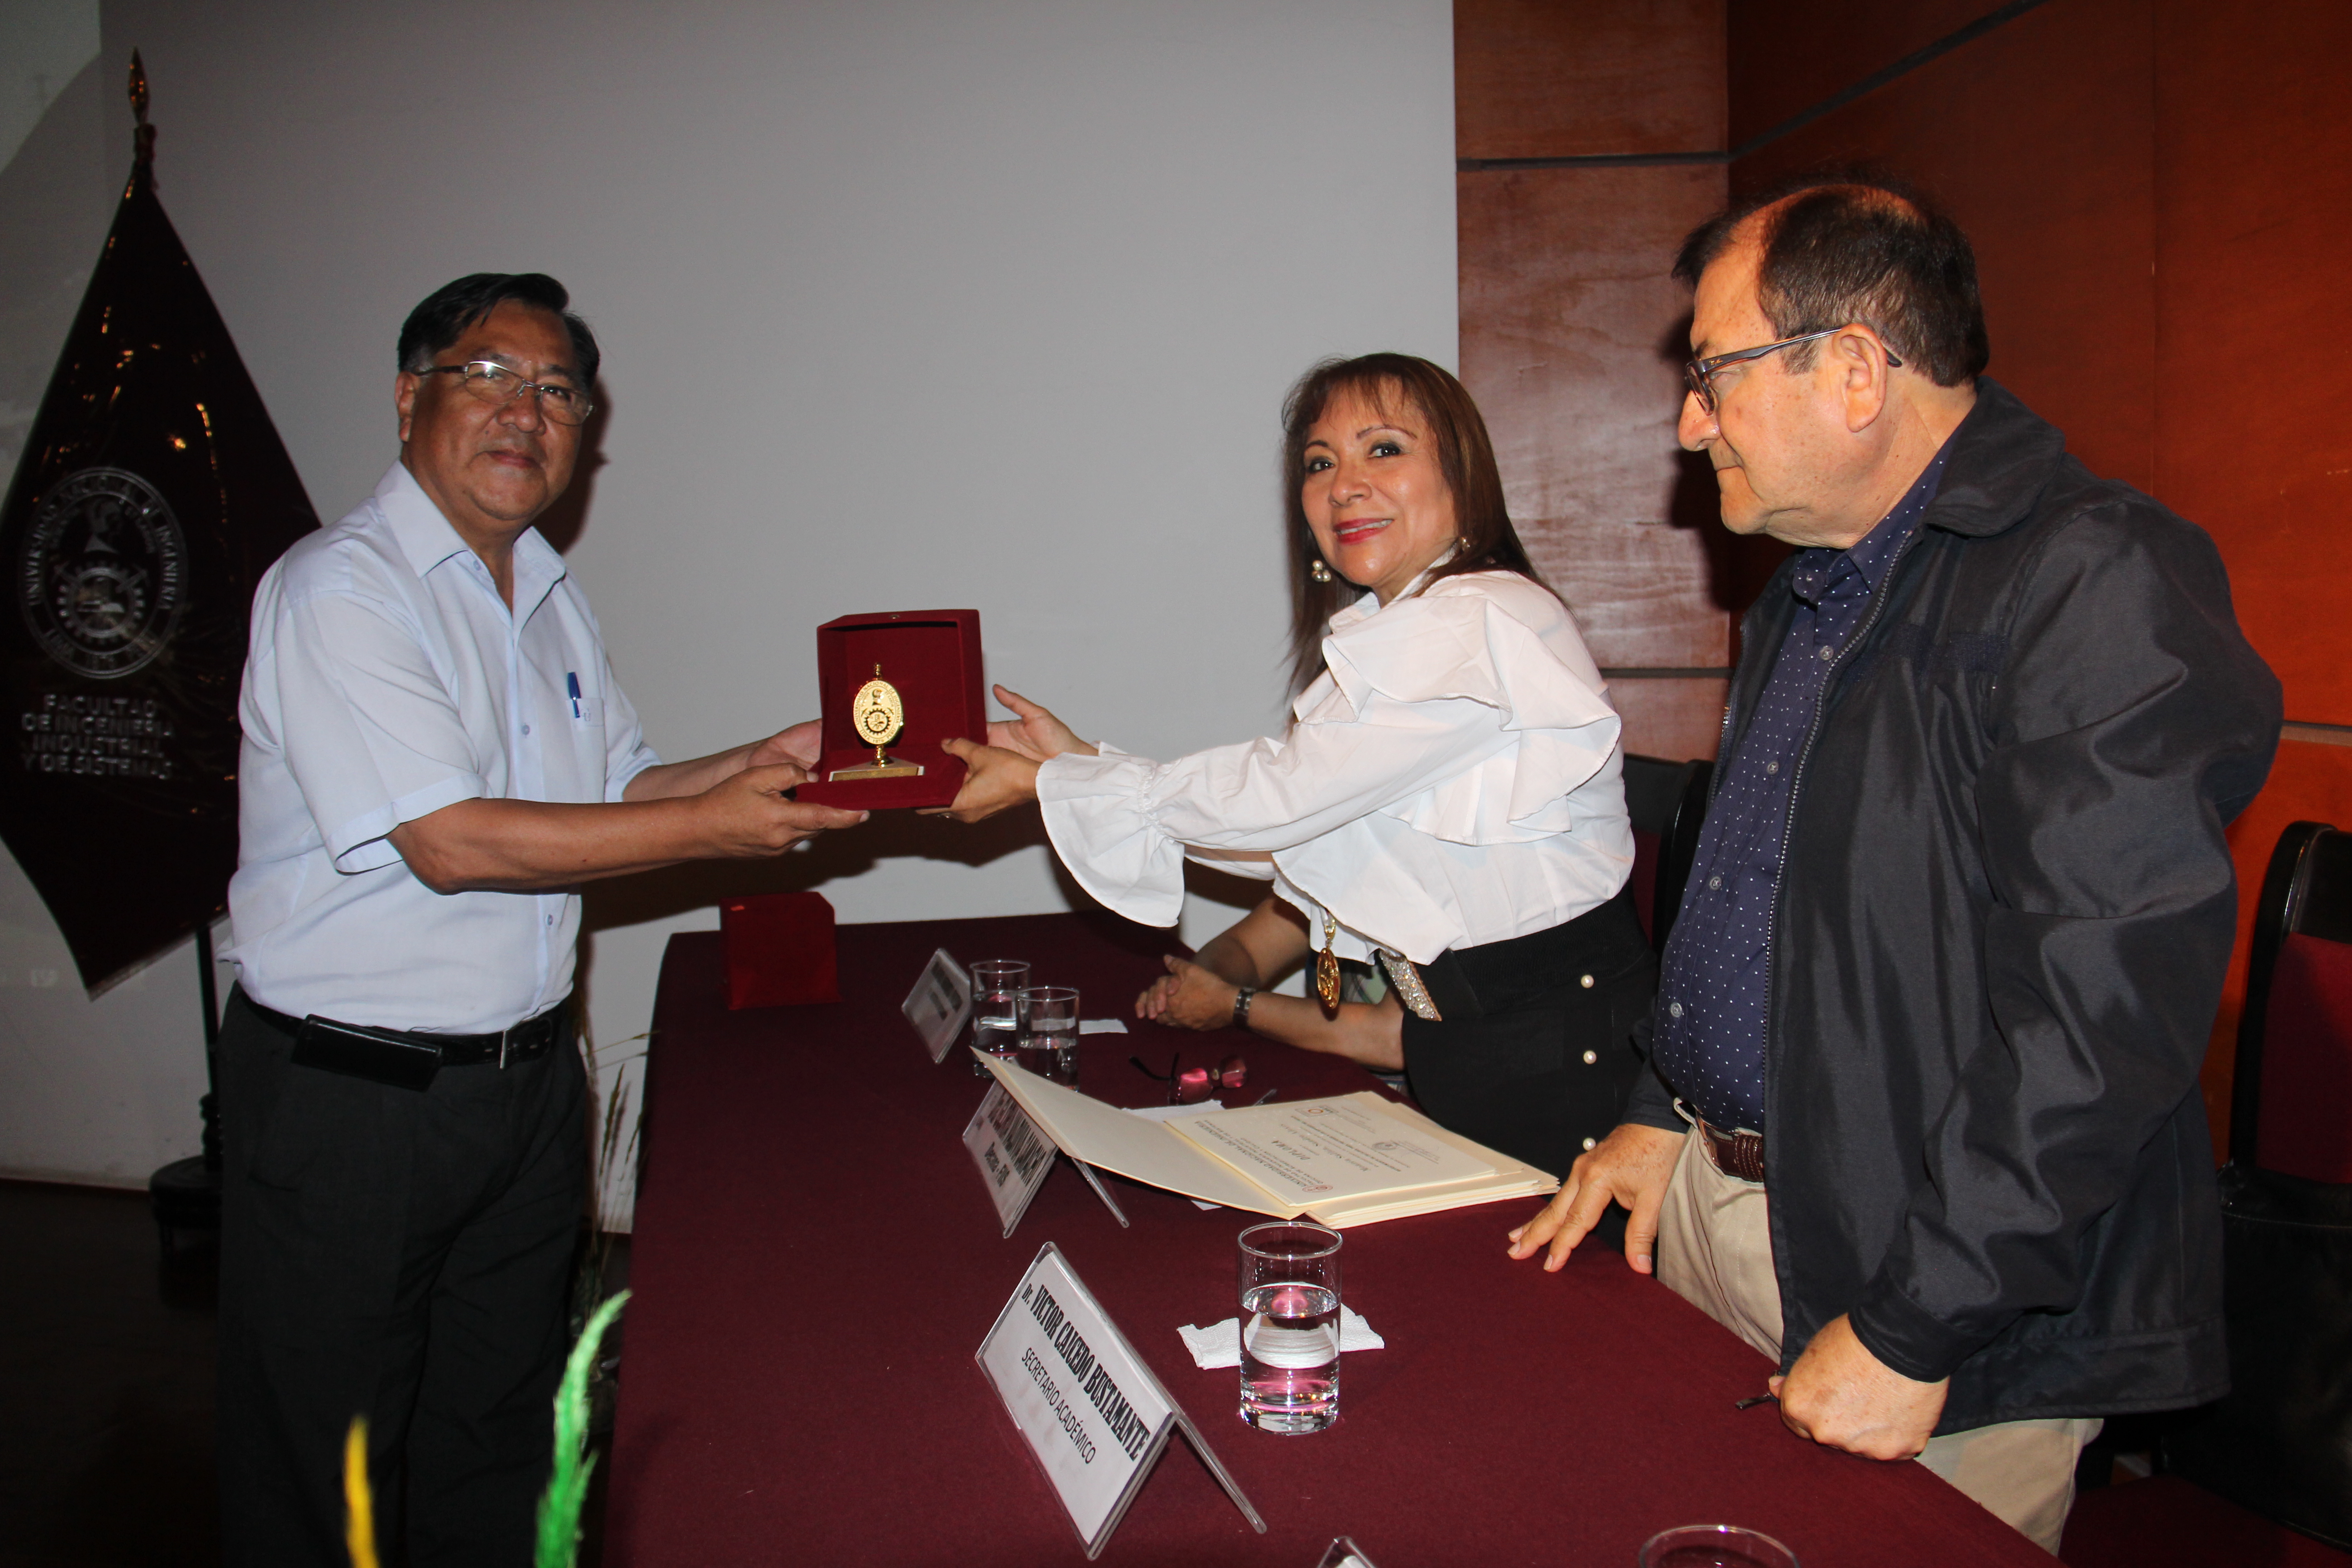 Entrega reconocimiento docente por la Dra. Valdivia